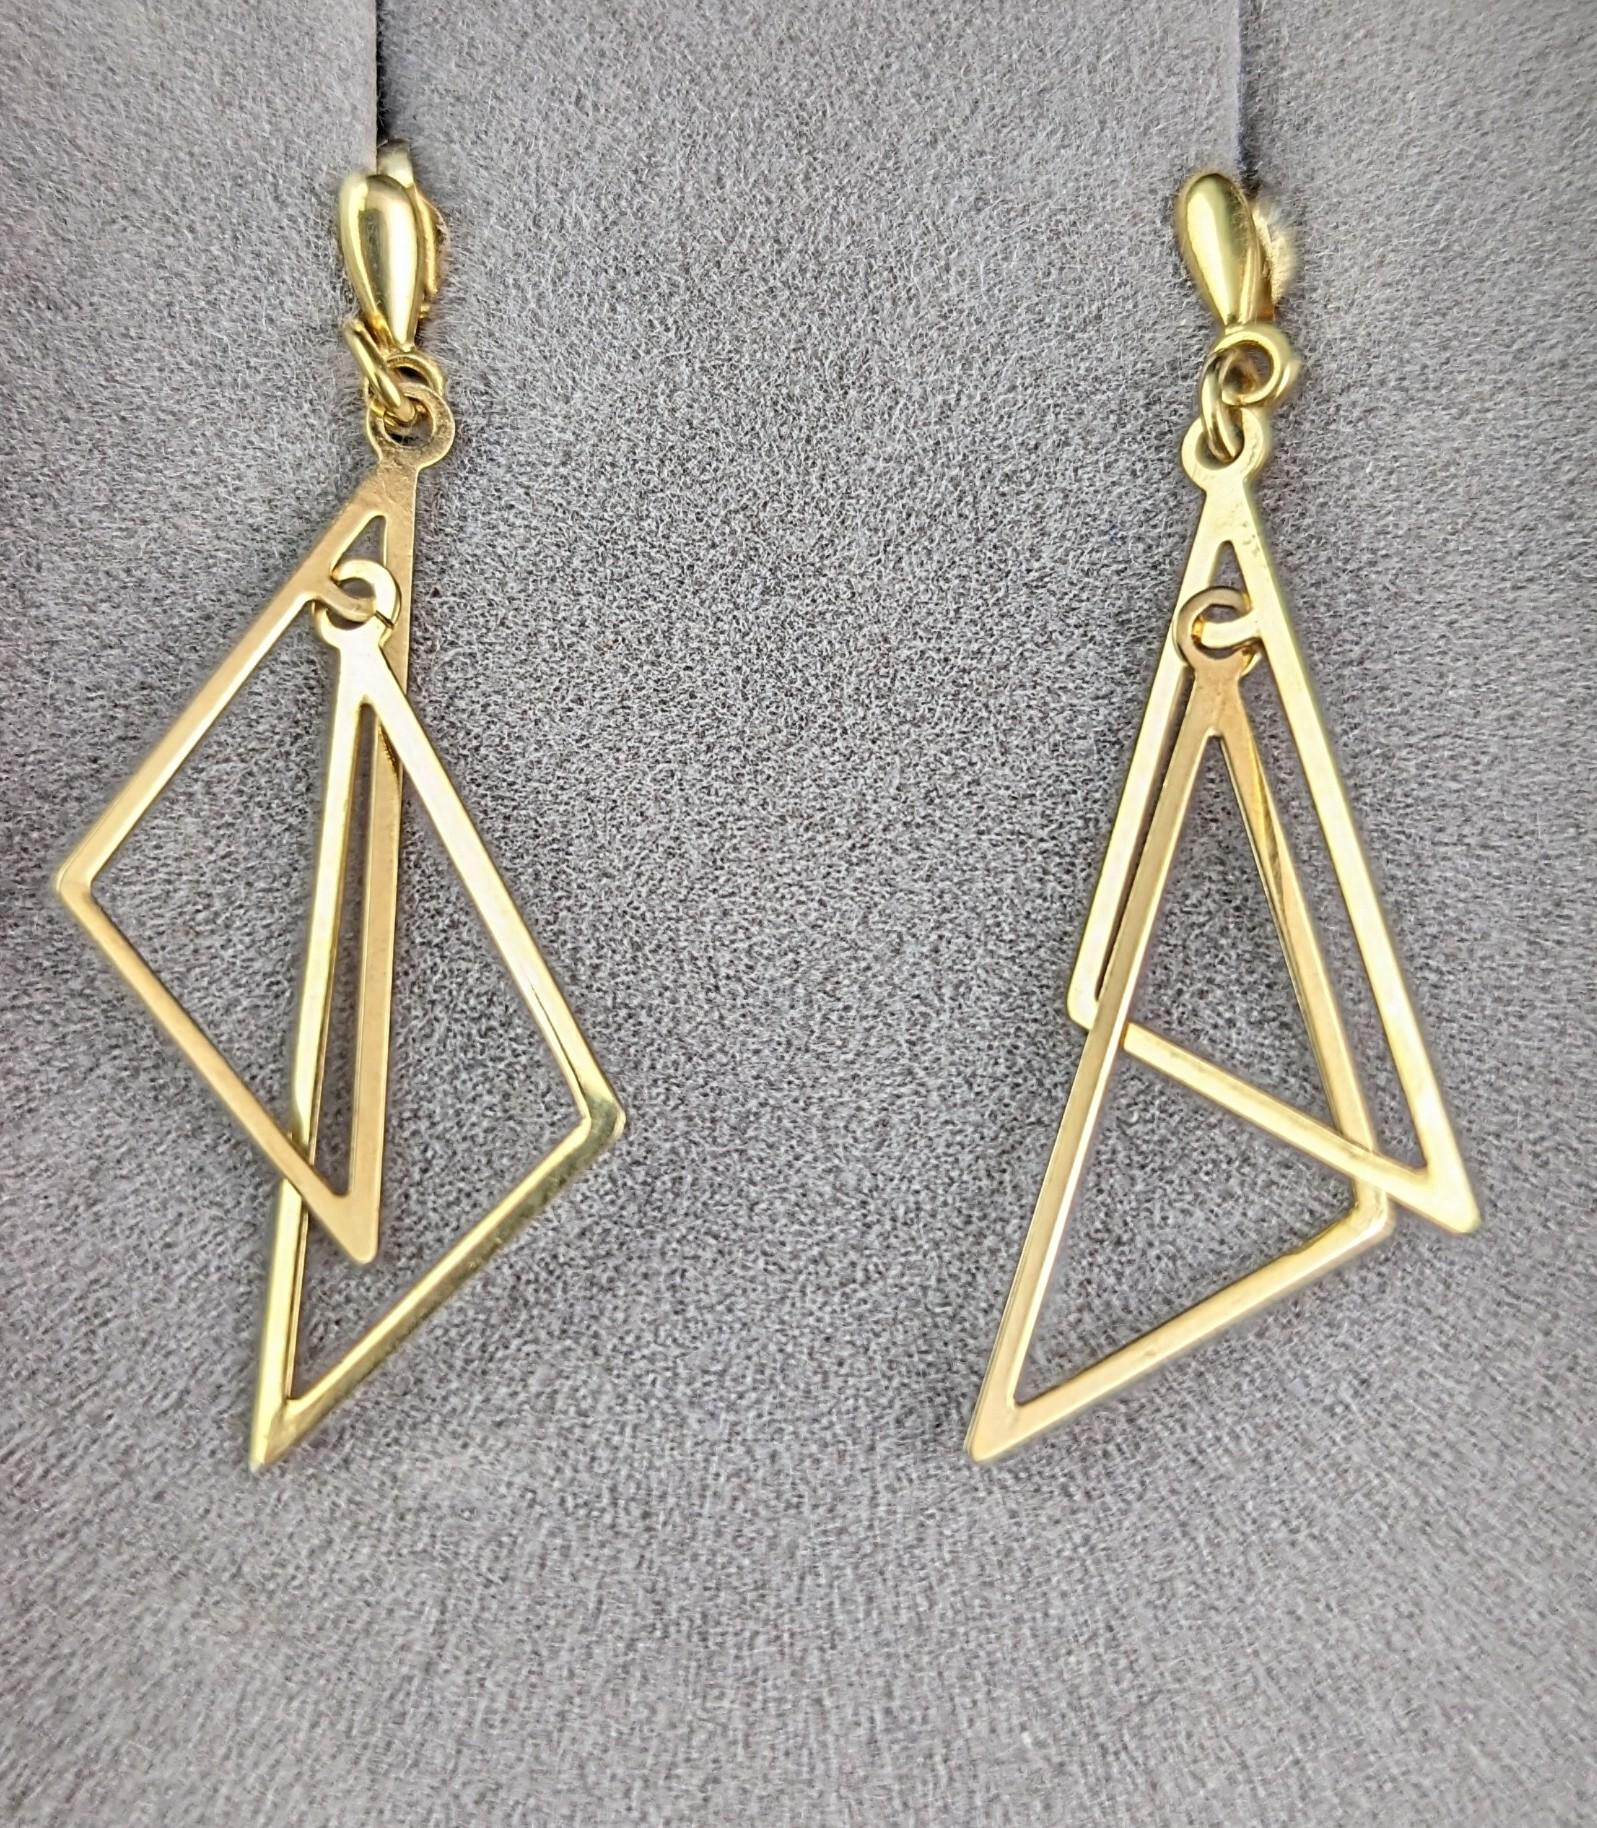 Ein wunderschönes Paar Vintage-Ohrringe aus 9 Karat Gelbgold.

Das modernistische Paar besteht aus zwei durchbrochenen, ineinander greifenden Dreiecken, die von einem eingebauten Bolzen herabhängen.

Sie haben die richtige Menge an Schimmer, da die